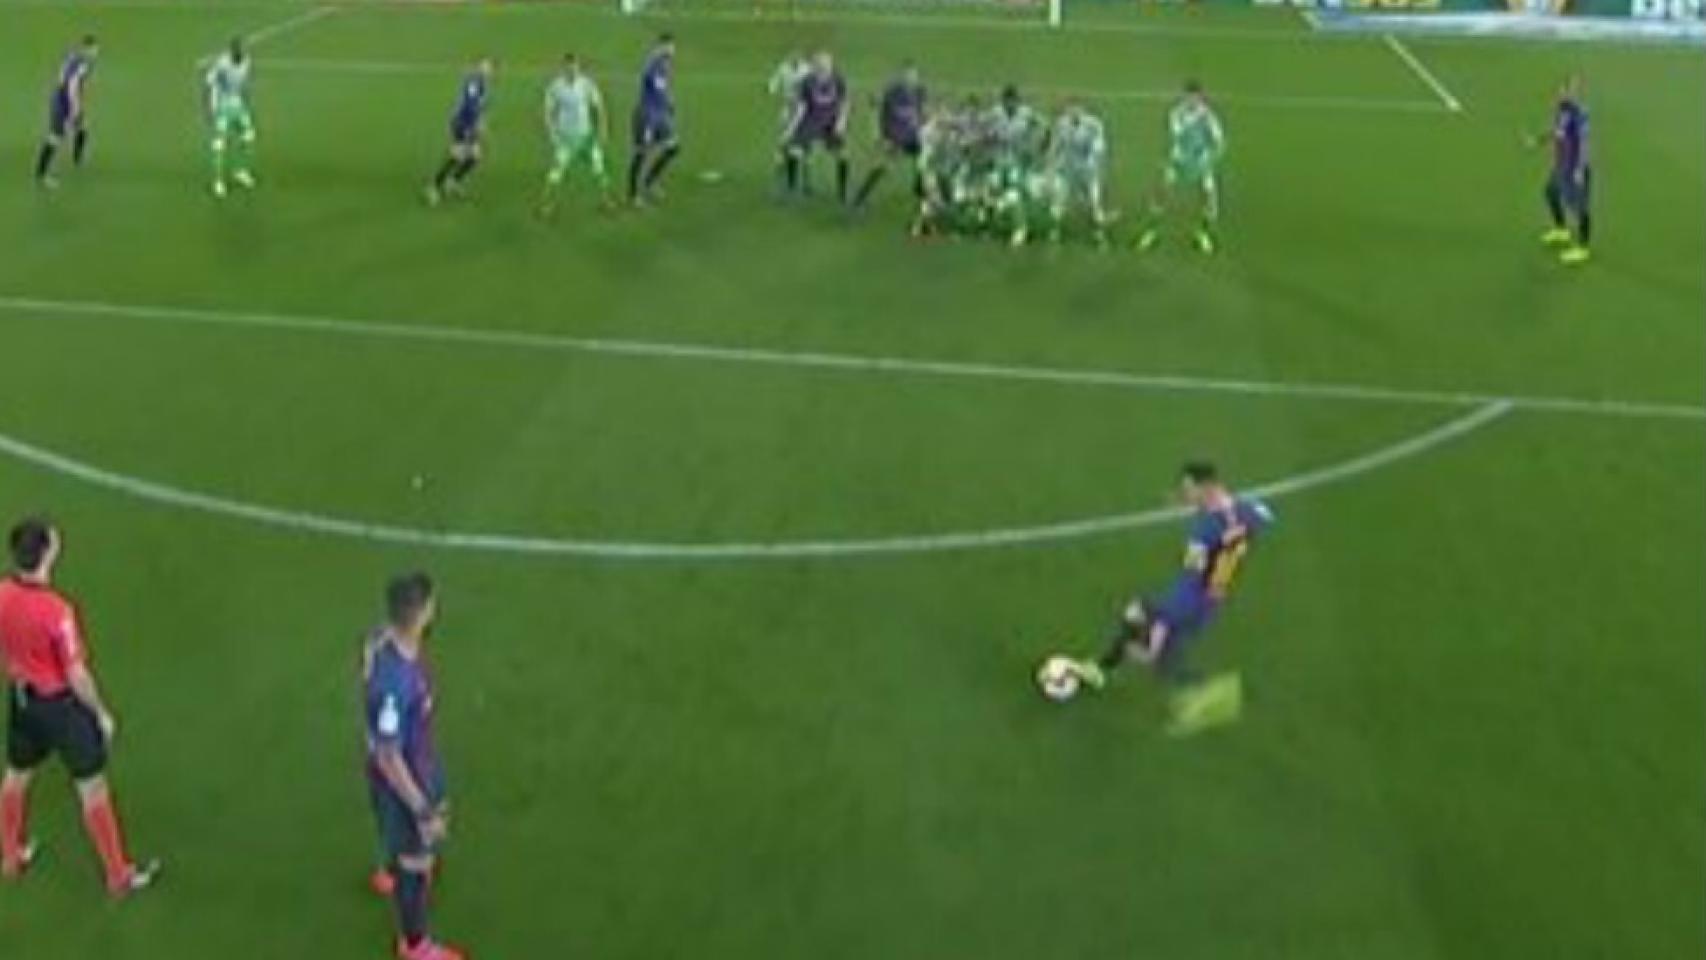 Regalo arbitral al Barça: hubo falta previa al Betis y Messi movió el balón